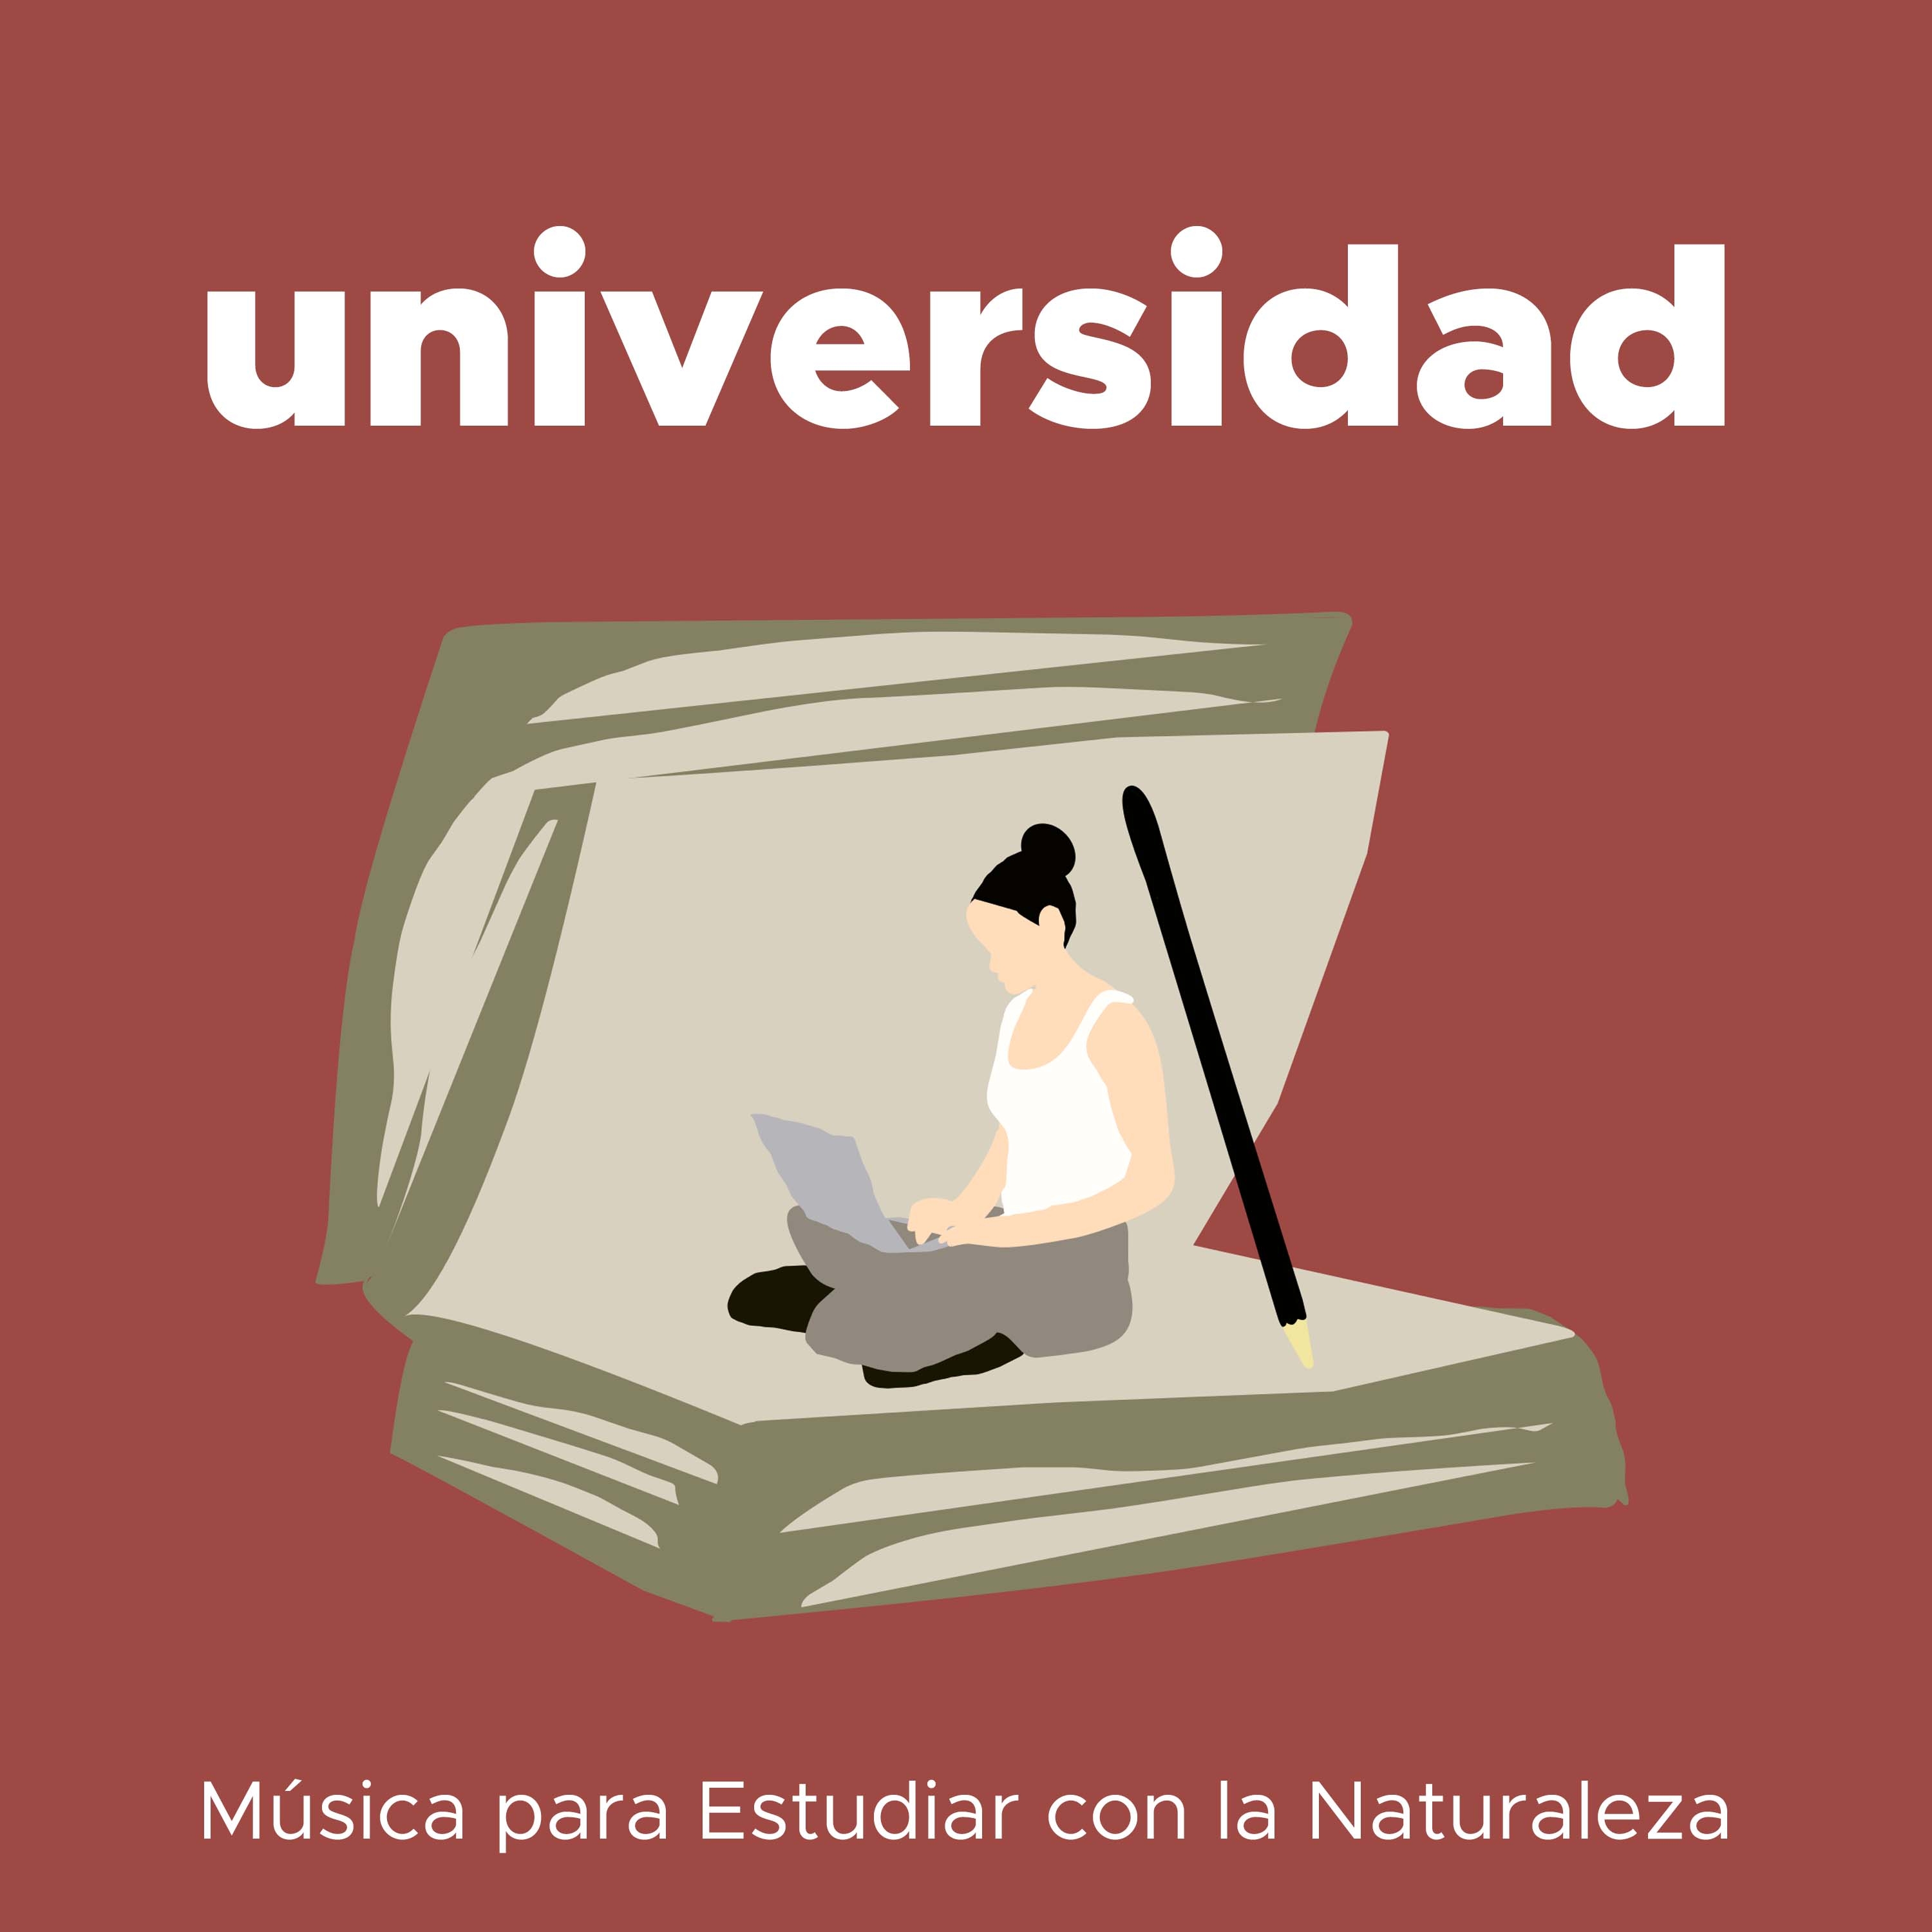 Universidad - Musica para Estudiar con la Naturaleza para Mejorar la Concentración y la Relación Profunda